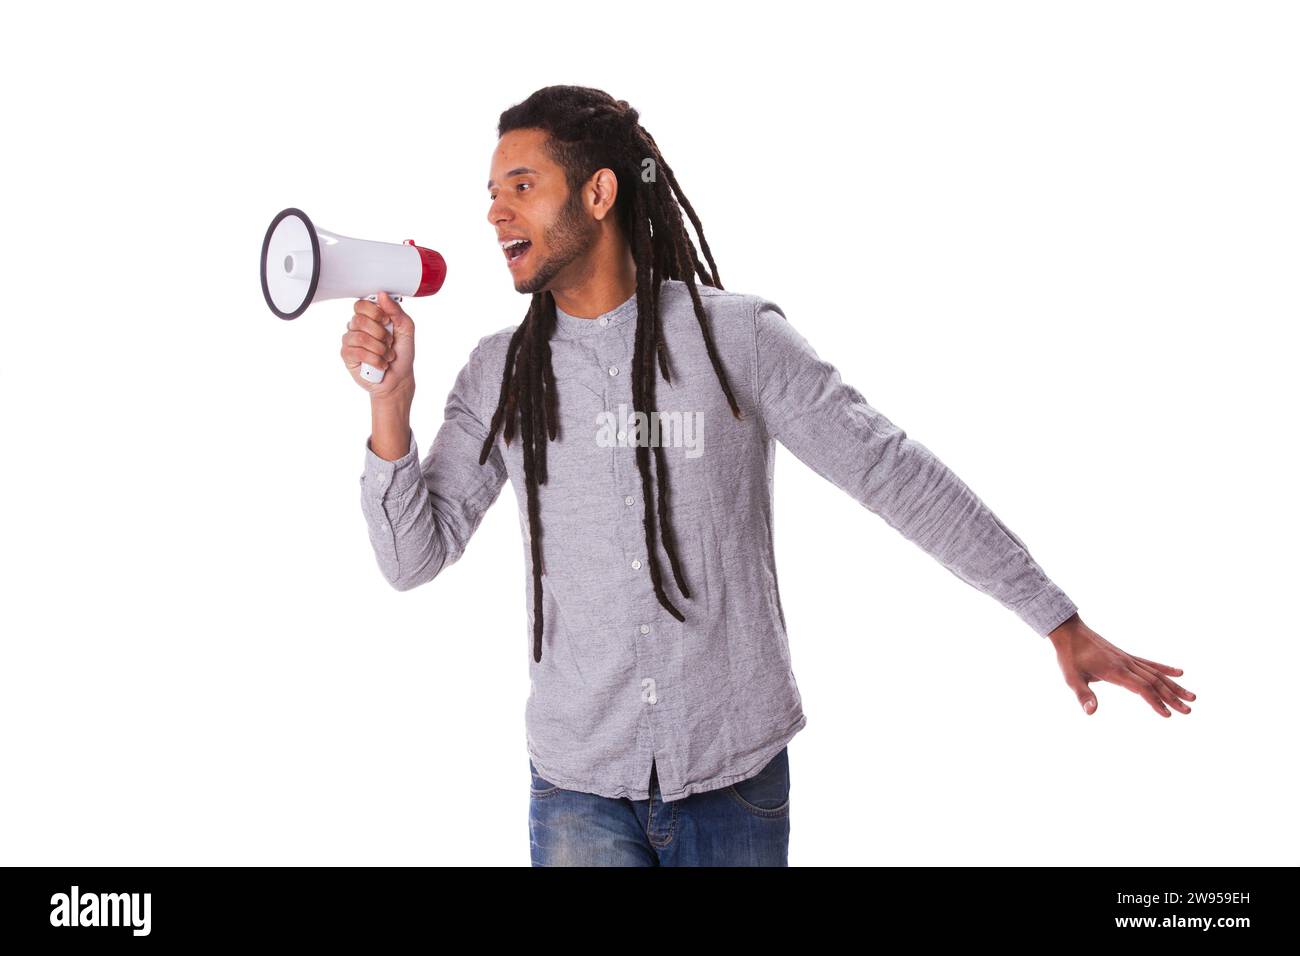 Hübscher rastafari-Mann, der über das Megaphon spricht Stockfoto